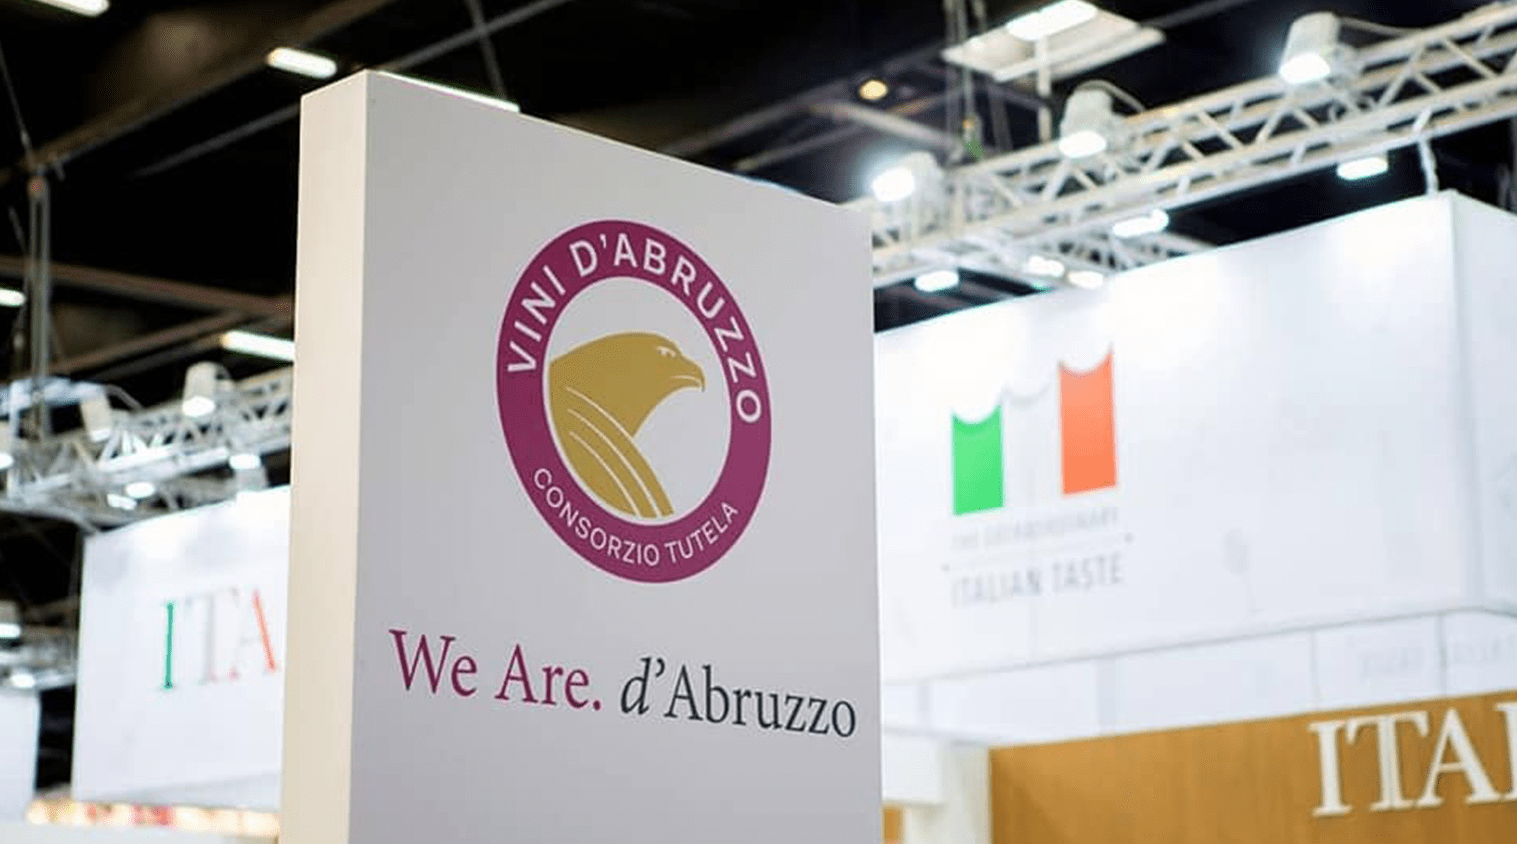 Padiglione Abruzzo al Vinitaly 2019.
Foto: Consorzio di Tutela Vini d'Abruzzo